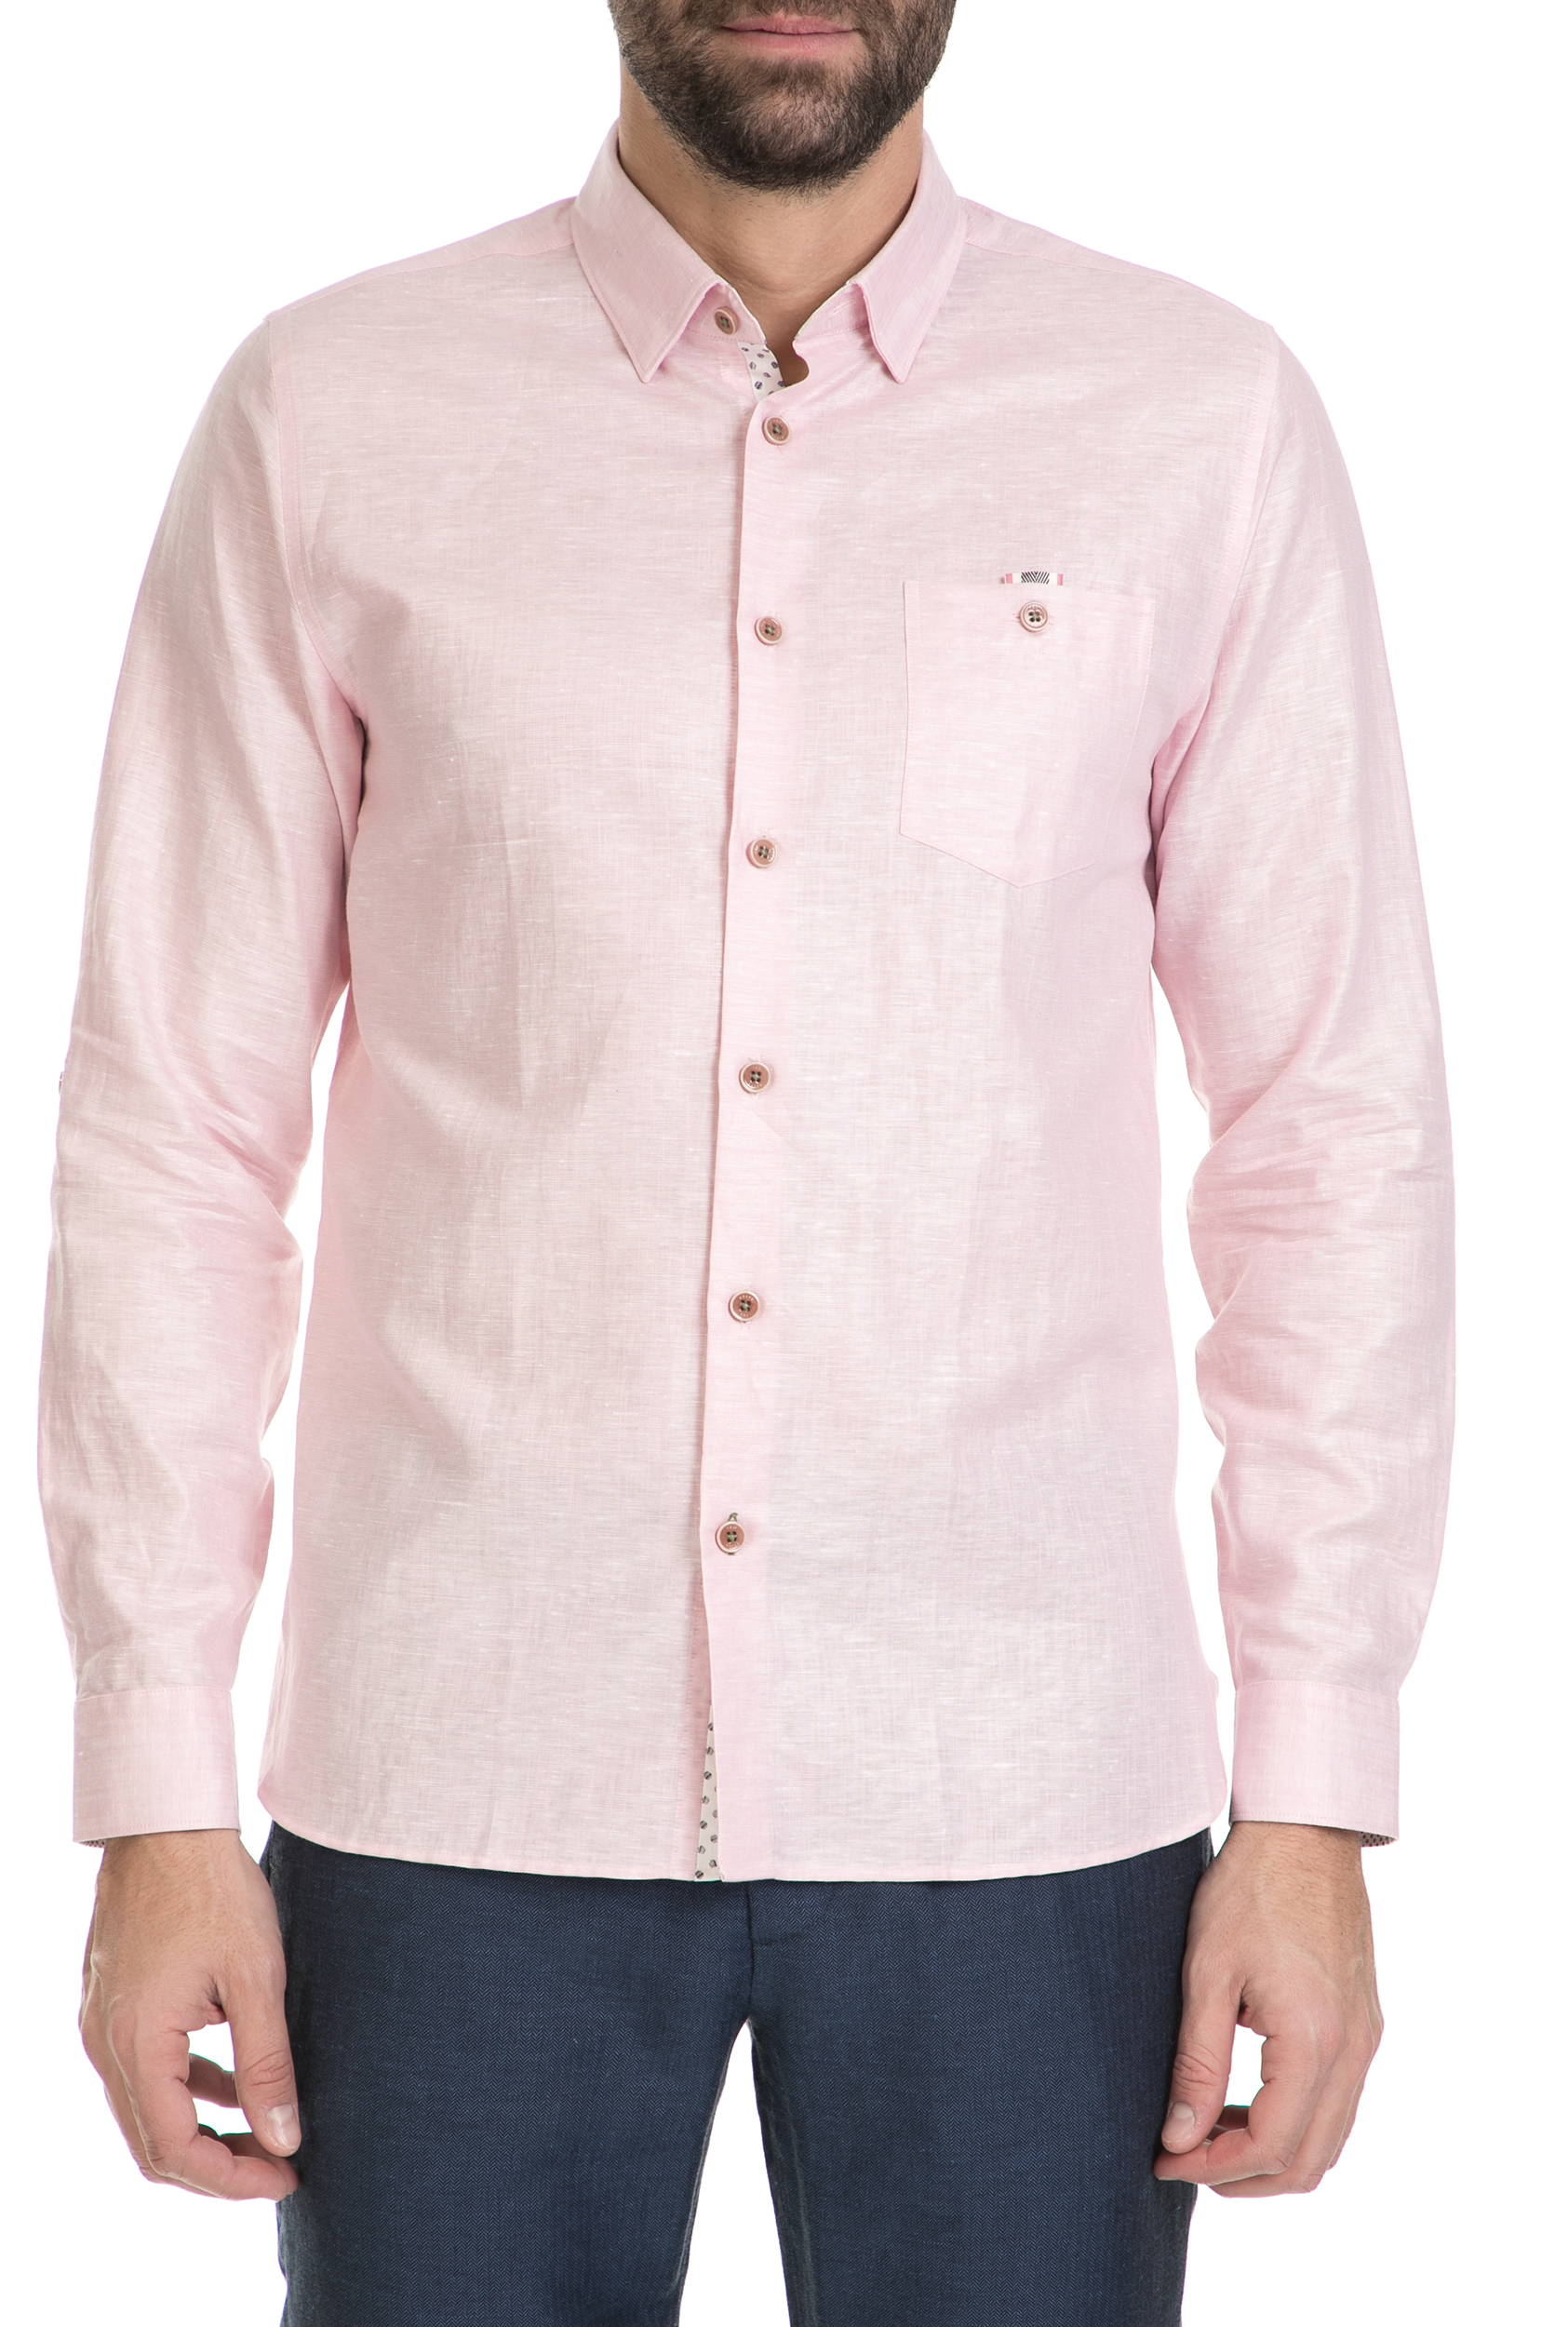 TED BAKER – Ανδρικο λινο πουκαμισο TED BAKER ροζ